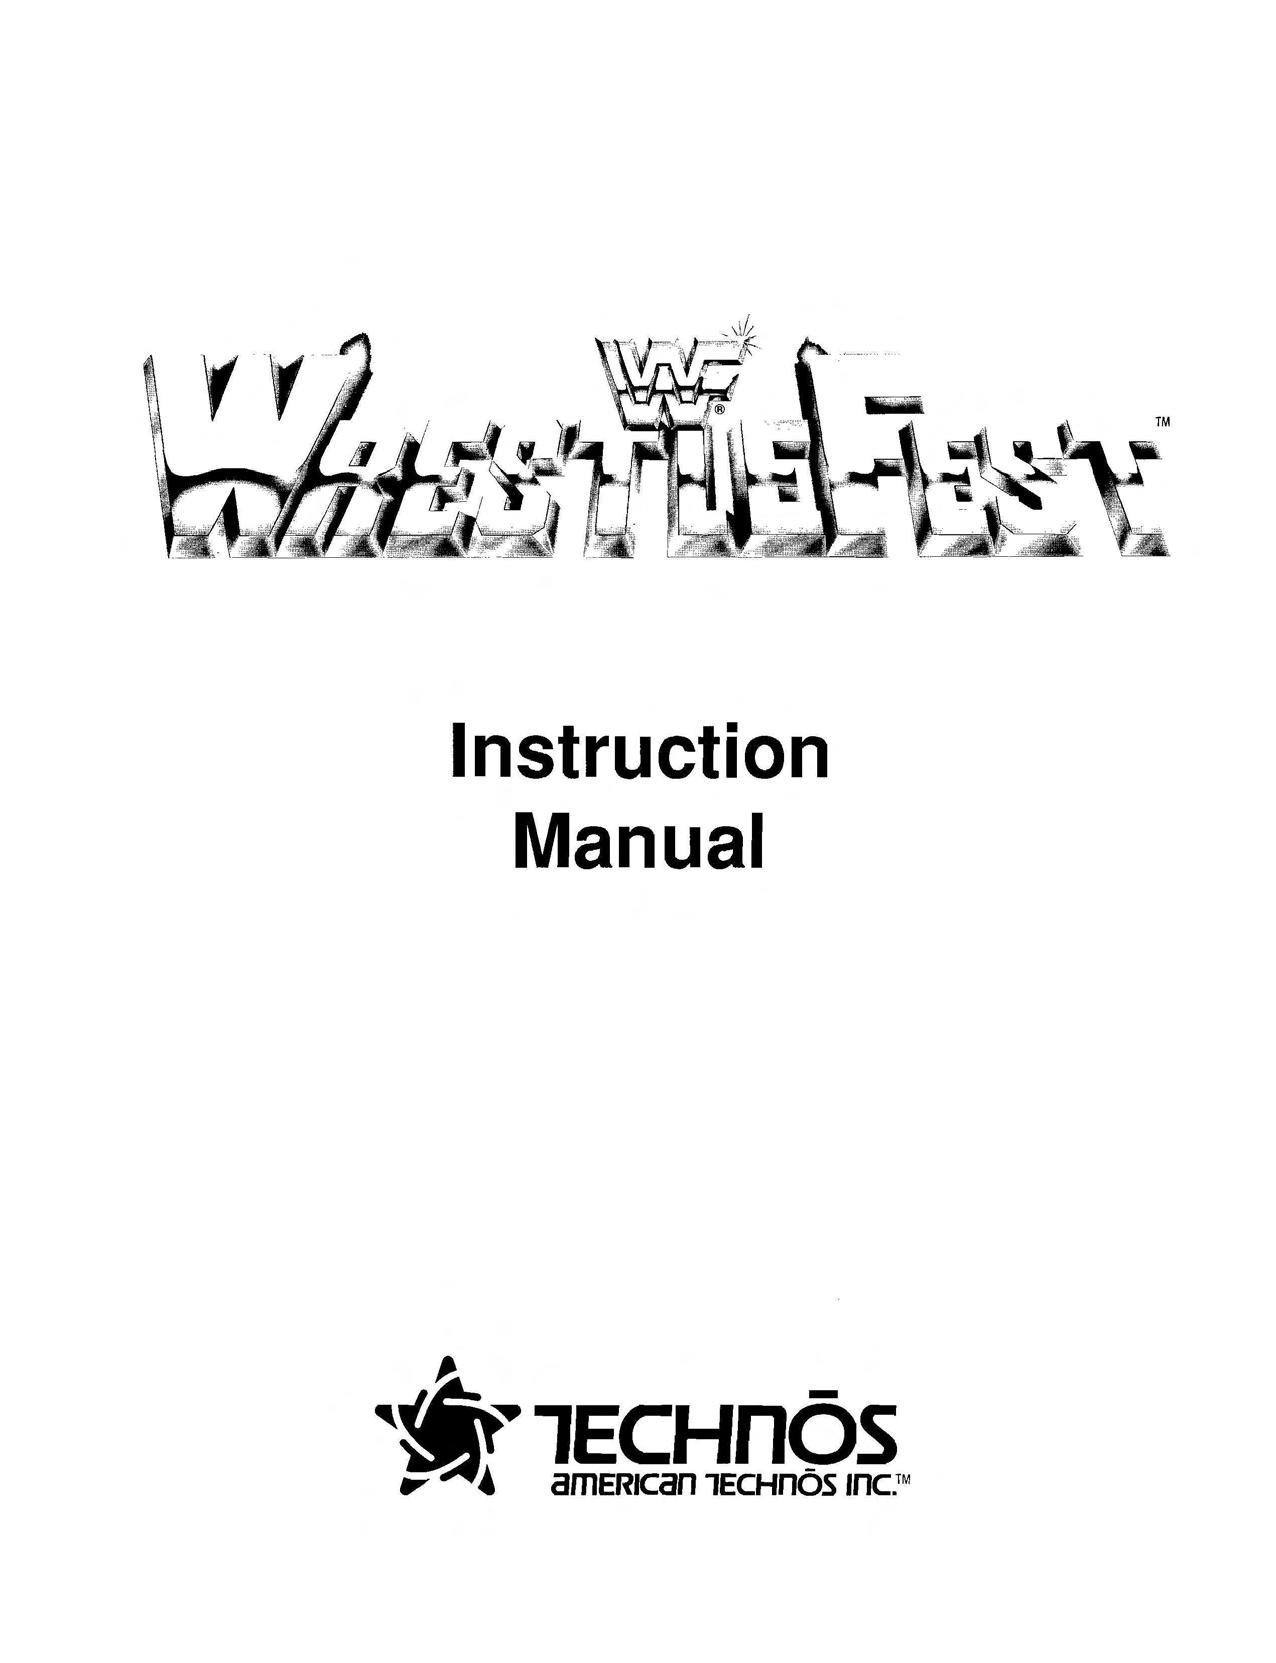 WWF Westlefest Instruction Manual